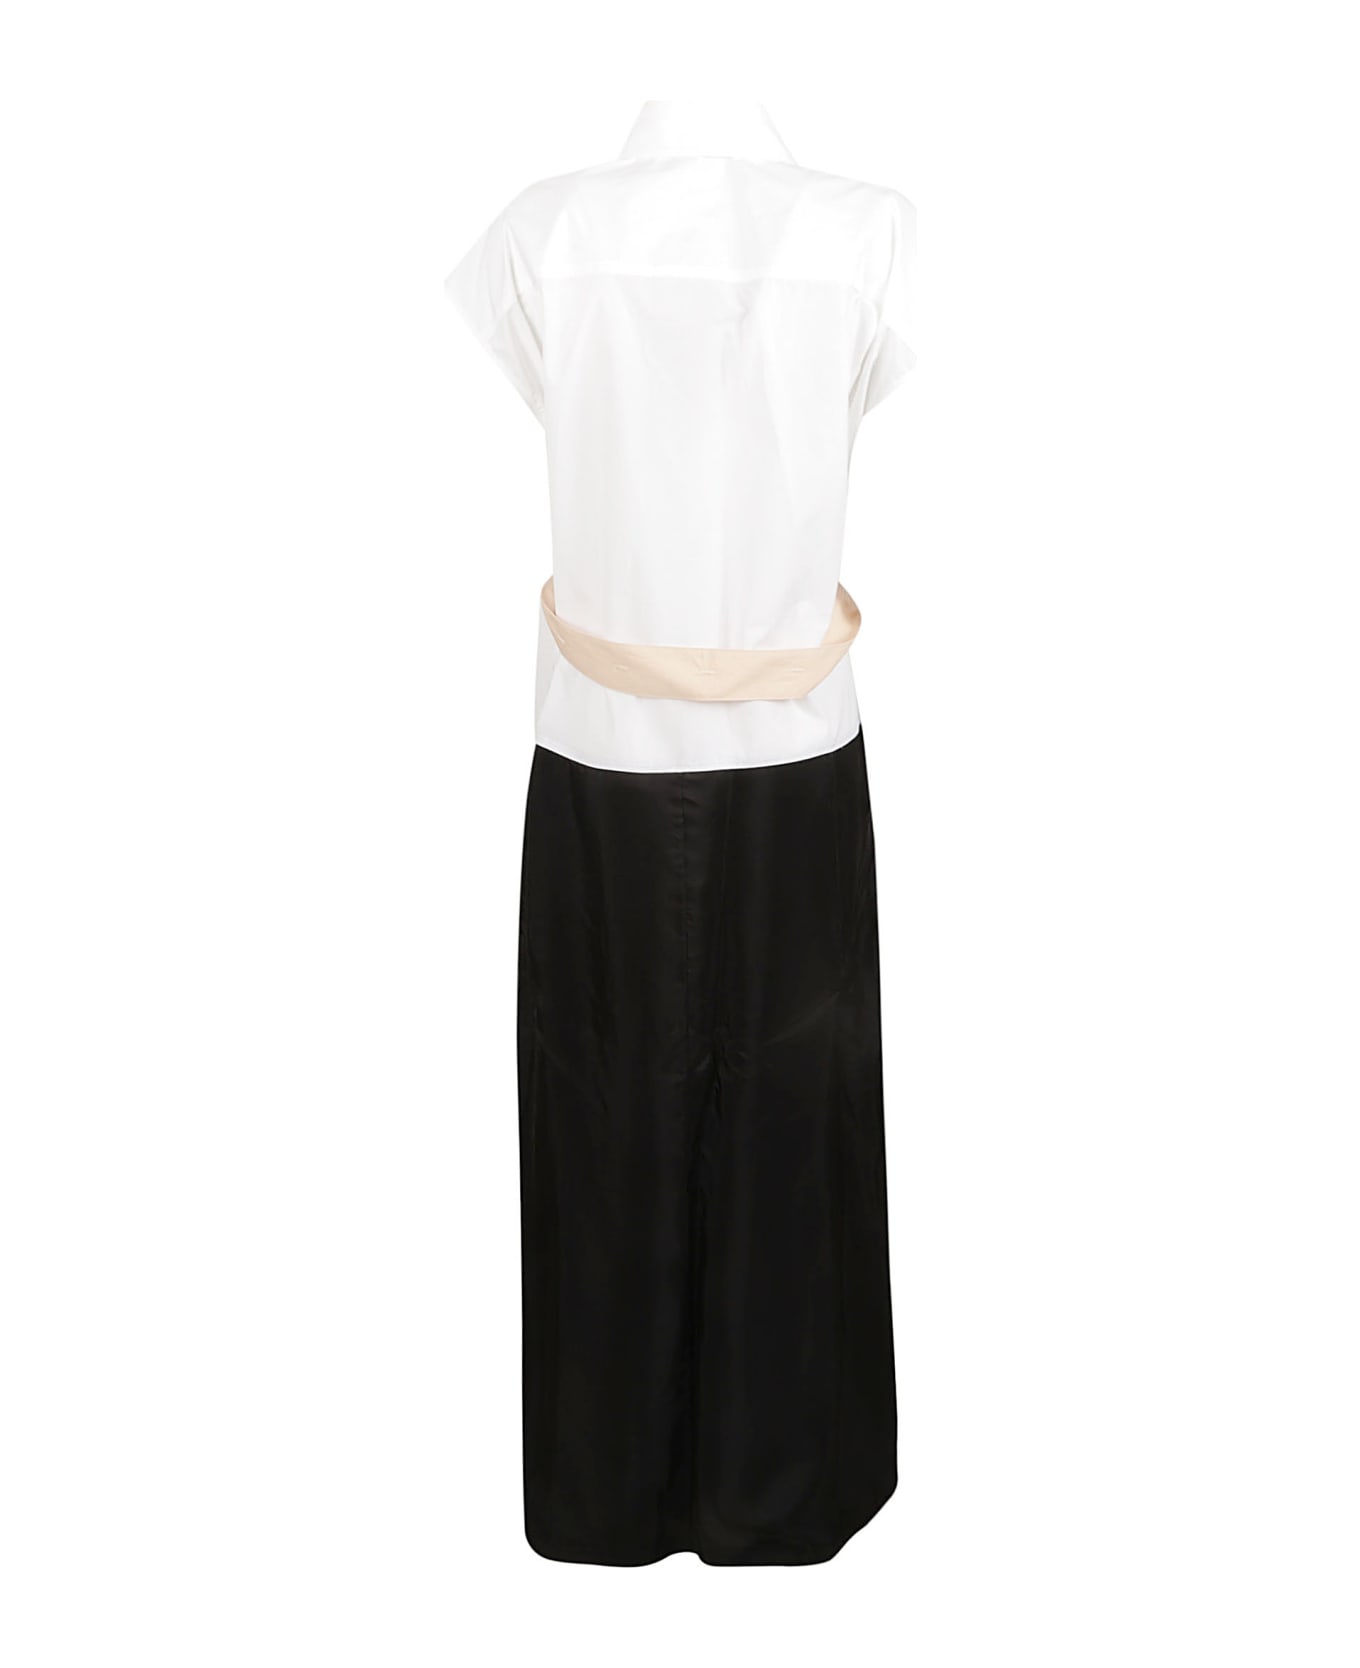 Fabiana Filippi Shirt Dress - White/Black